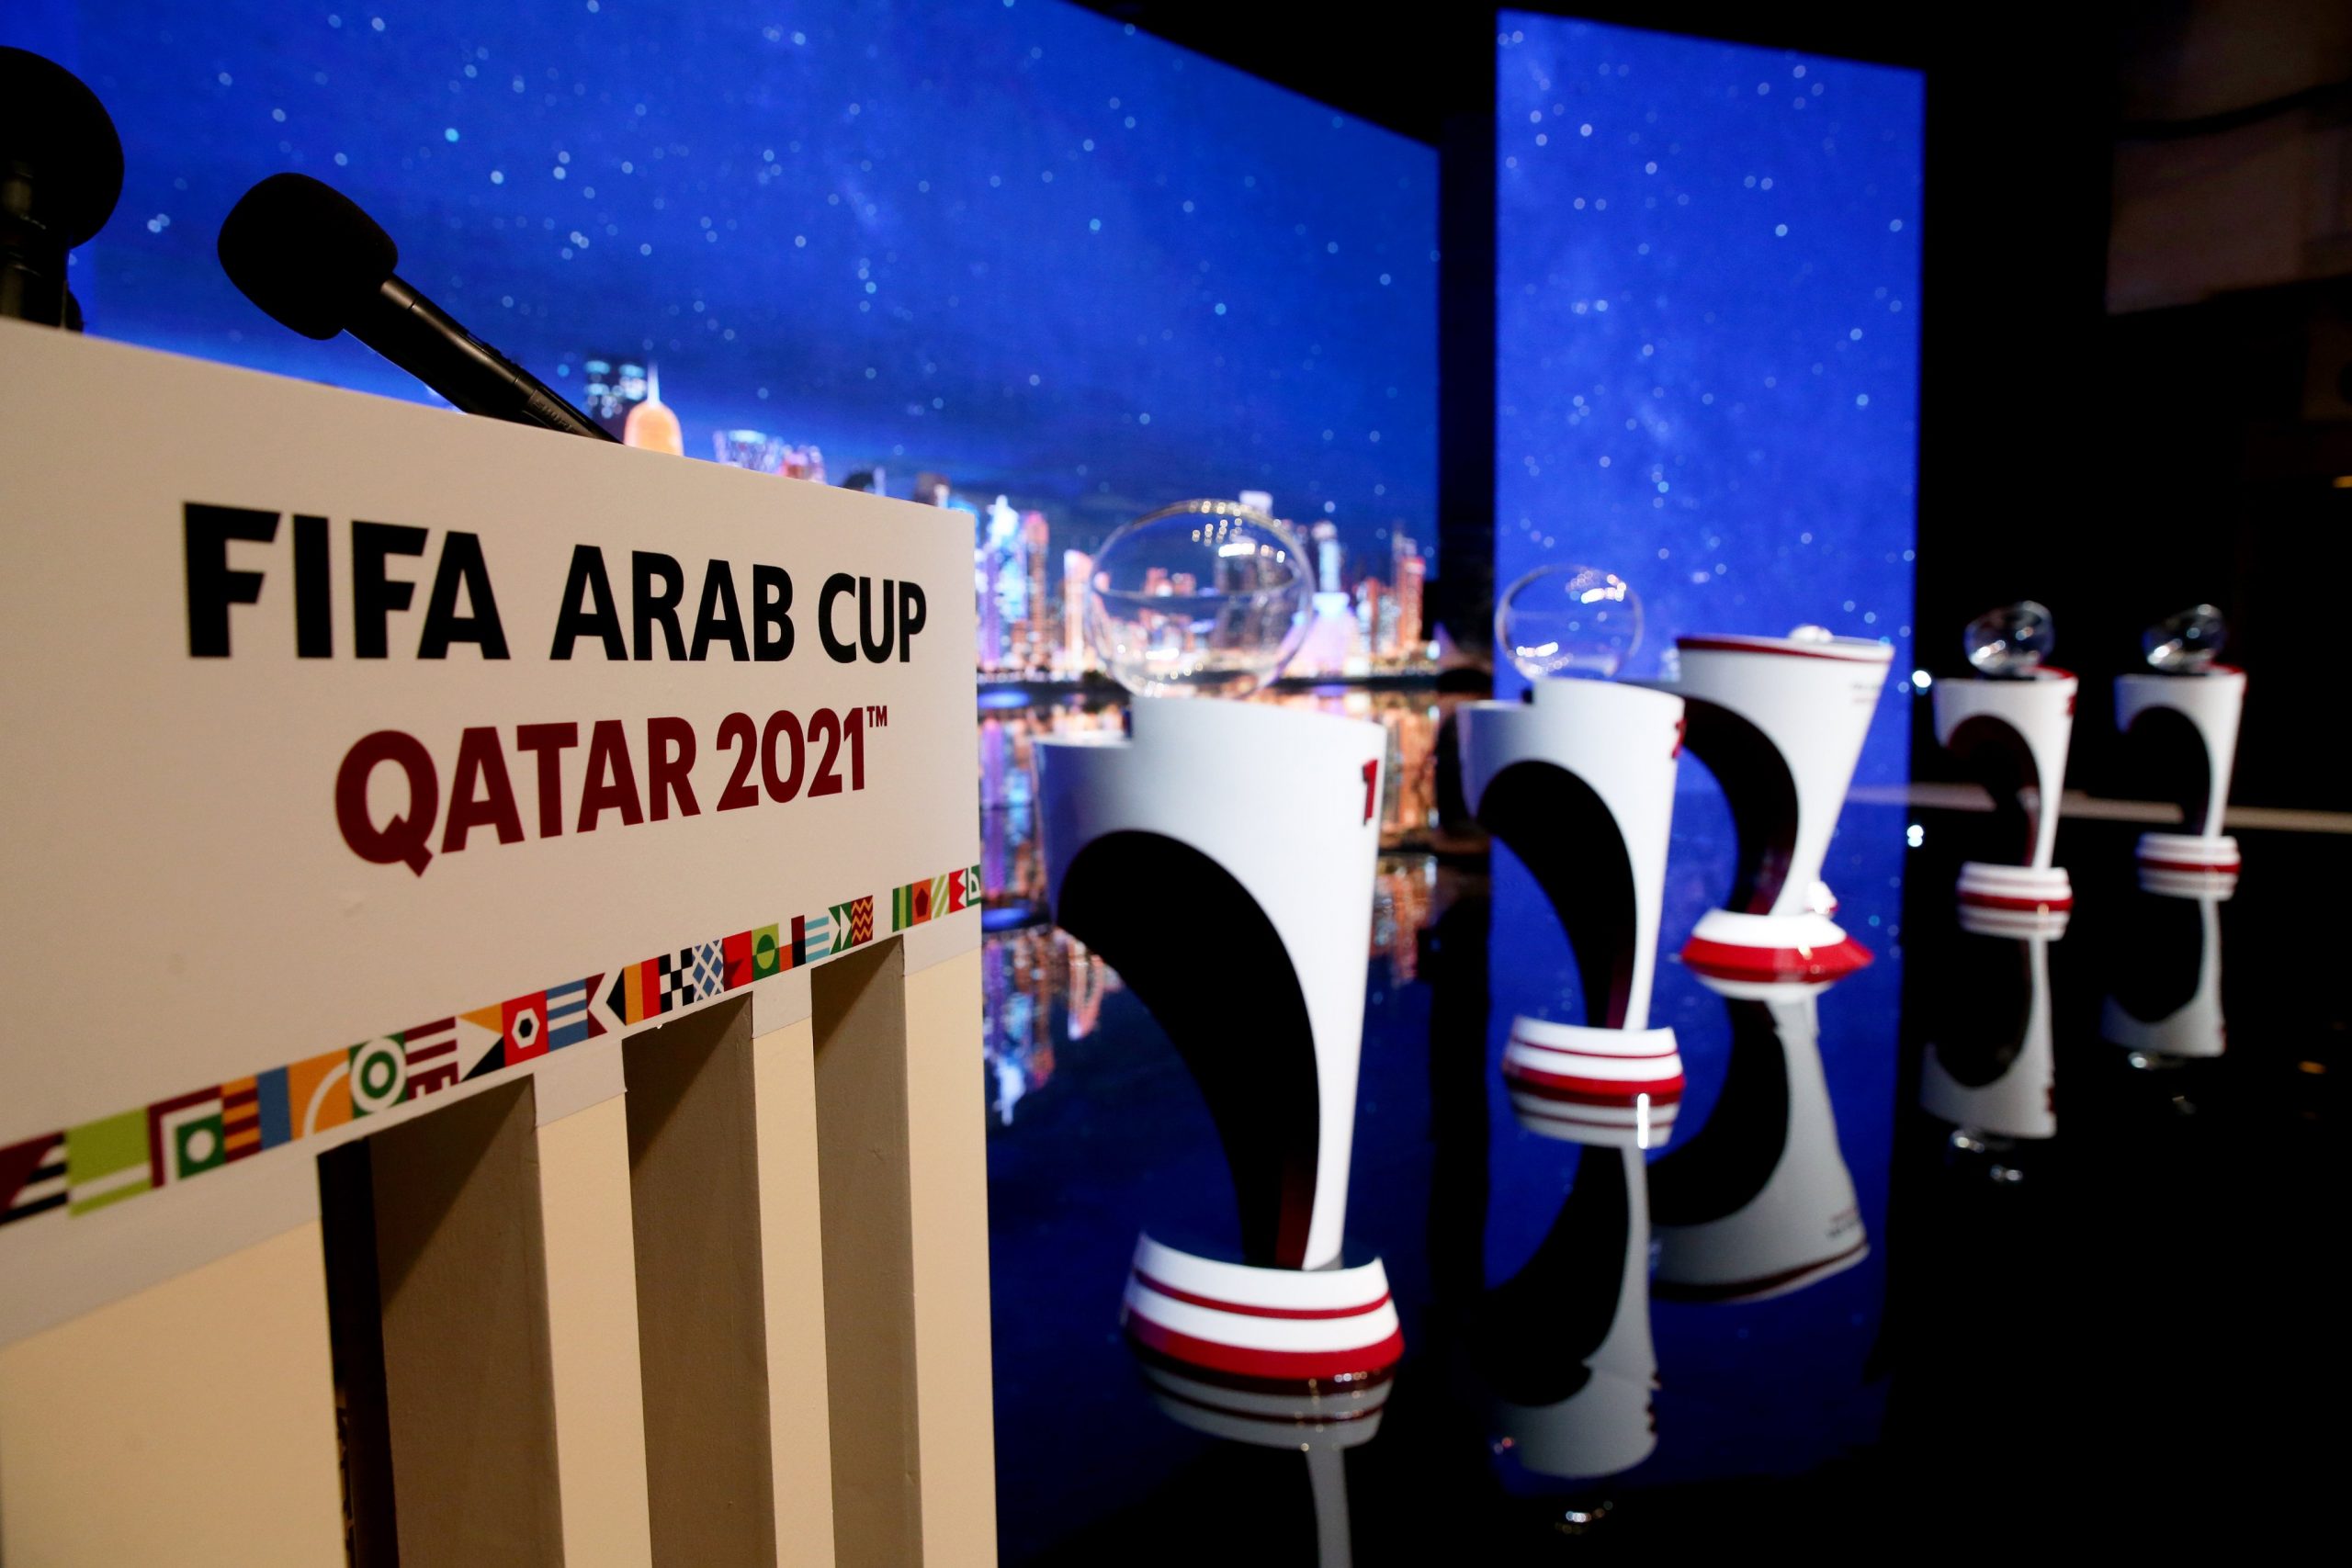 كأس فيفا العرب 2021